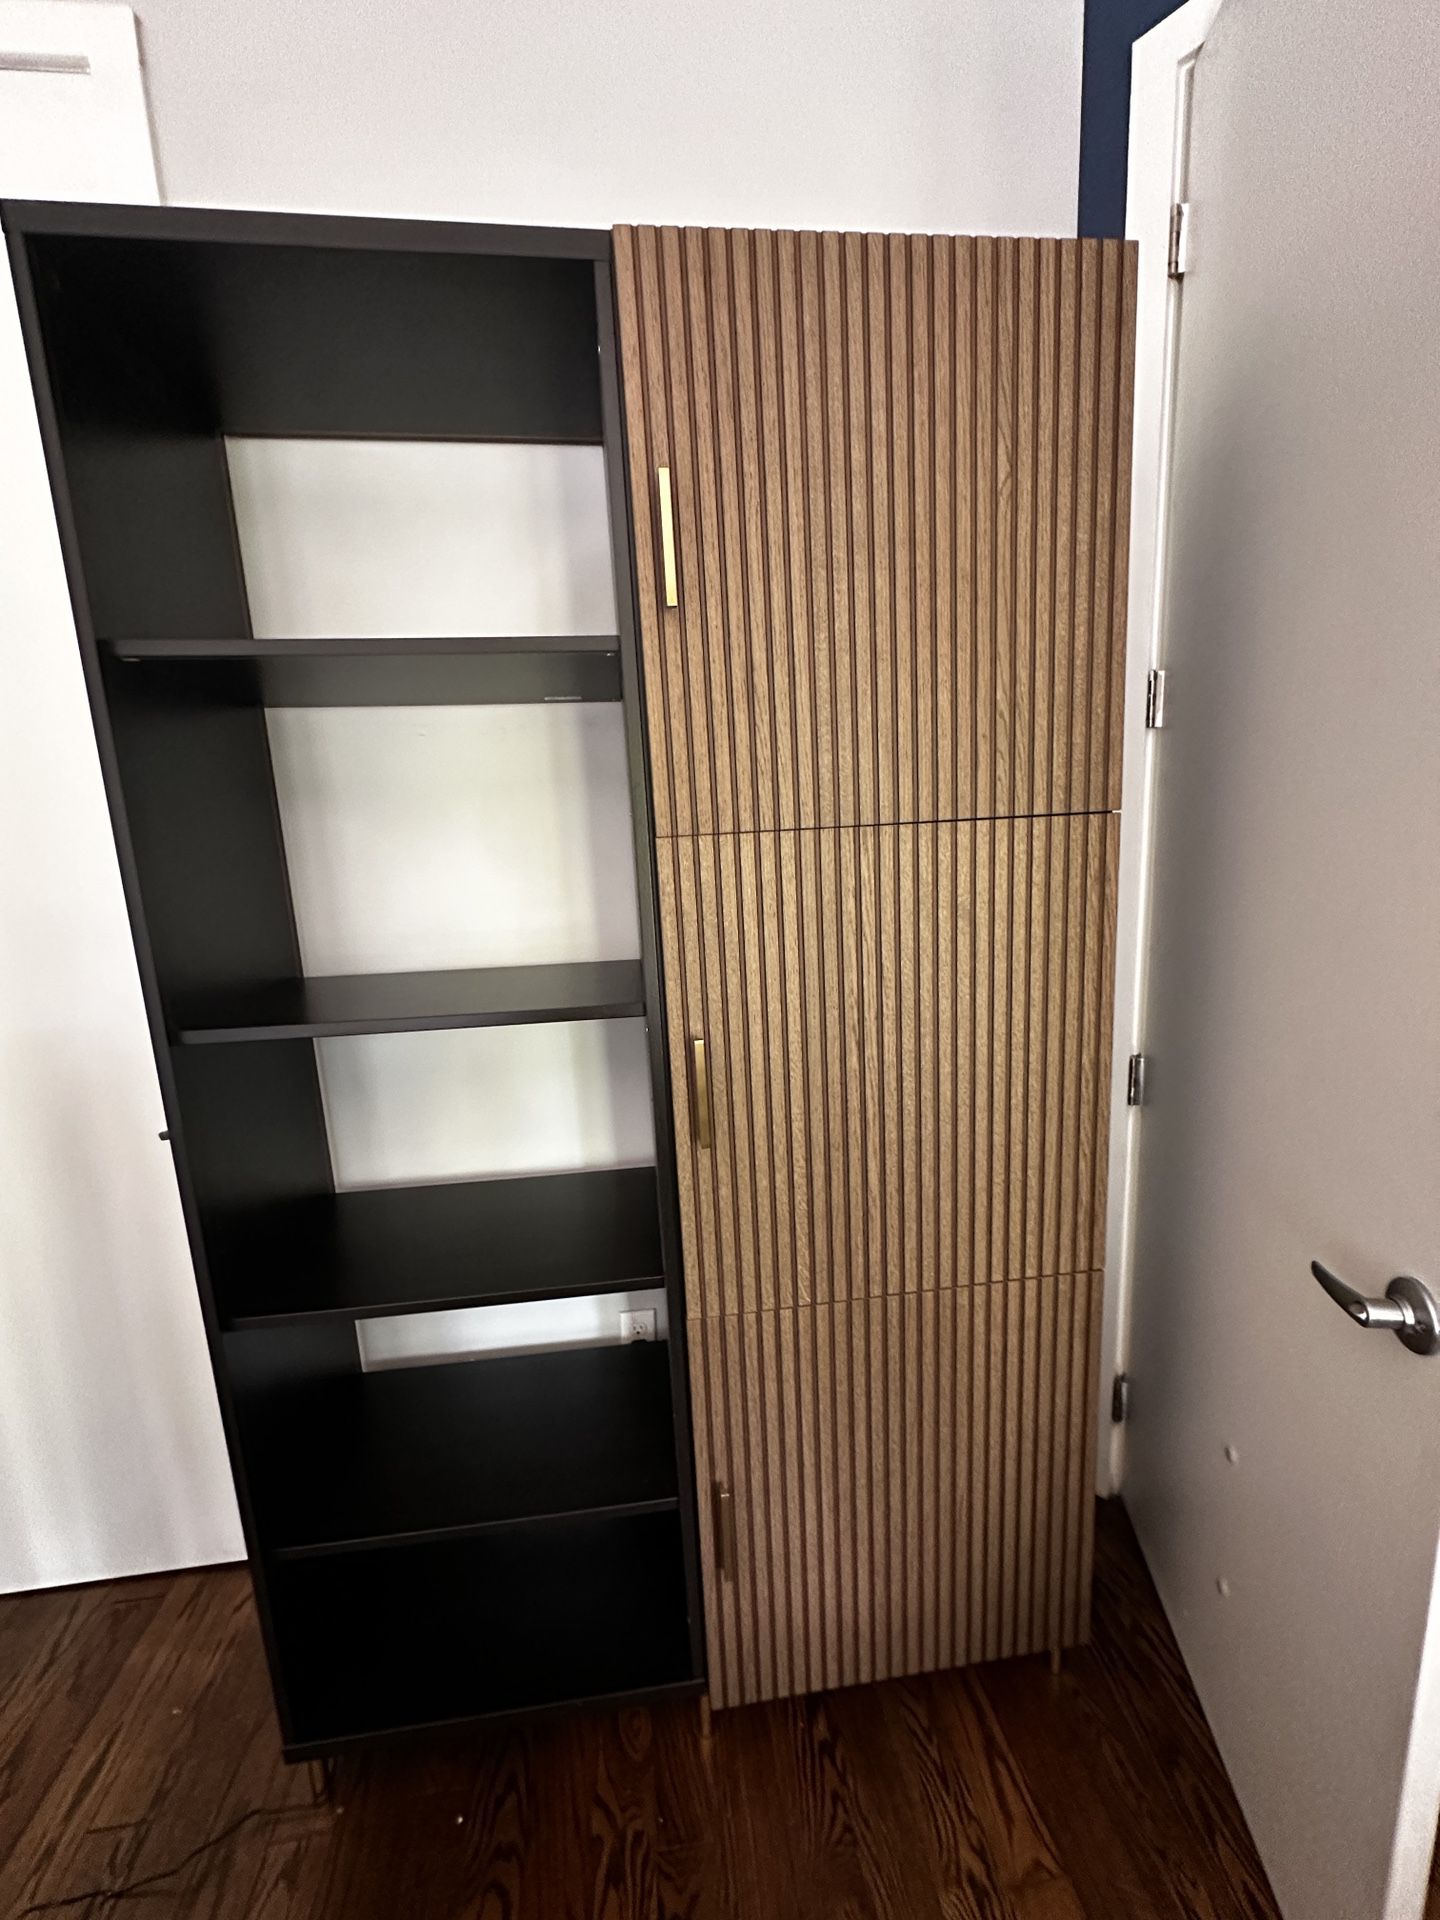 IKEA Besta Storage Combination With Doors